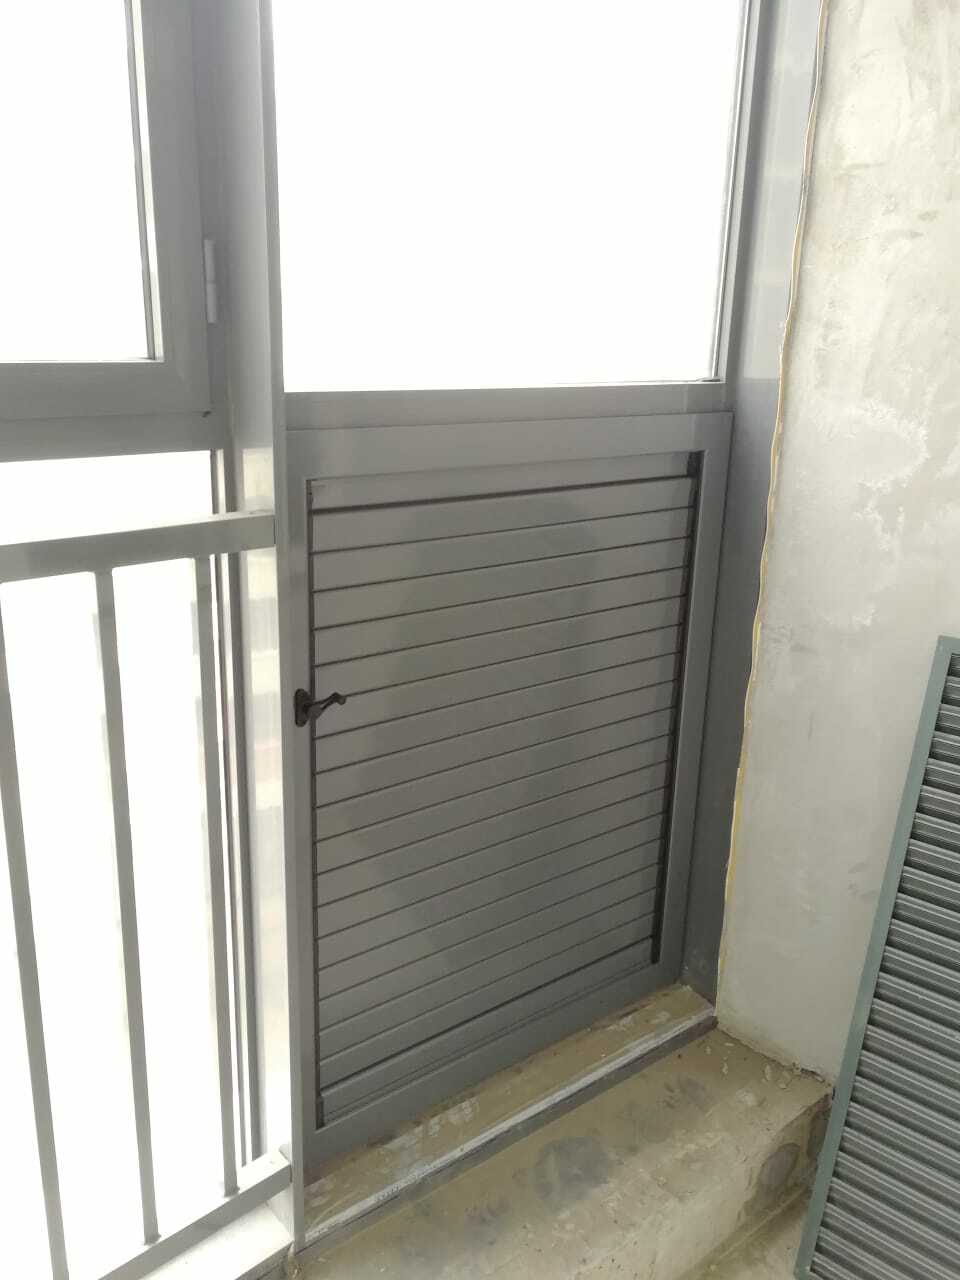 Металлическая вентиляционная решетка с регулируемыми жалюзи на балконе. Легальная замена вентрешетки от застройщика. Герметично. Шумоизоляция.